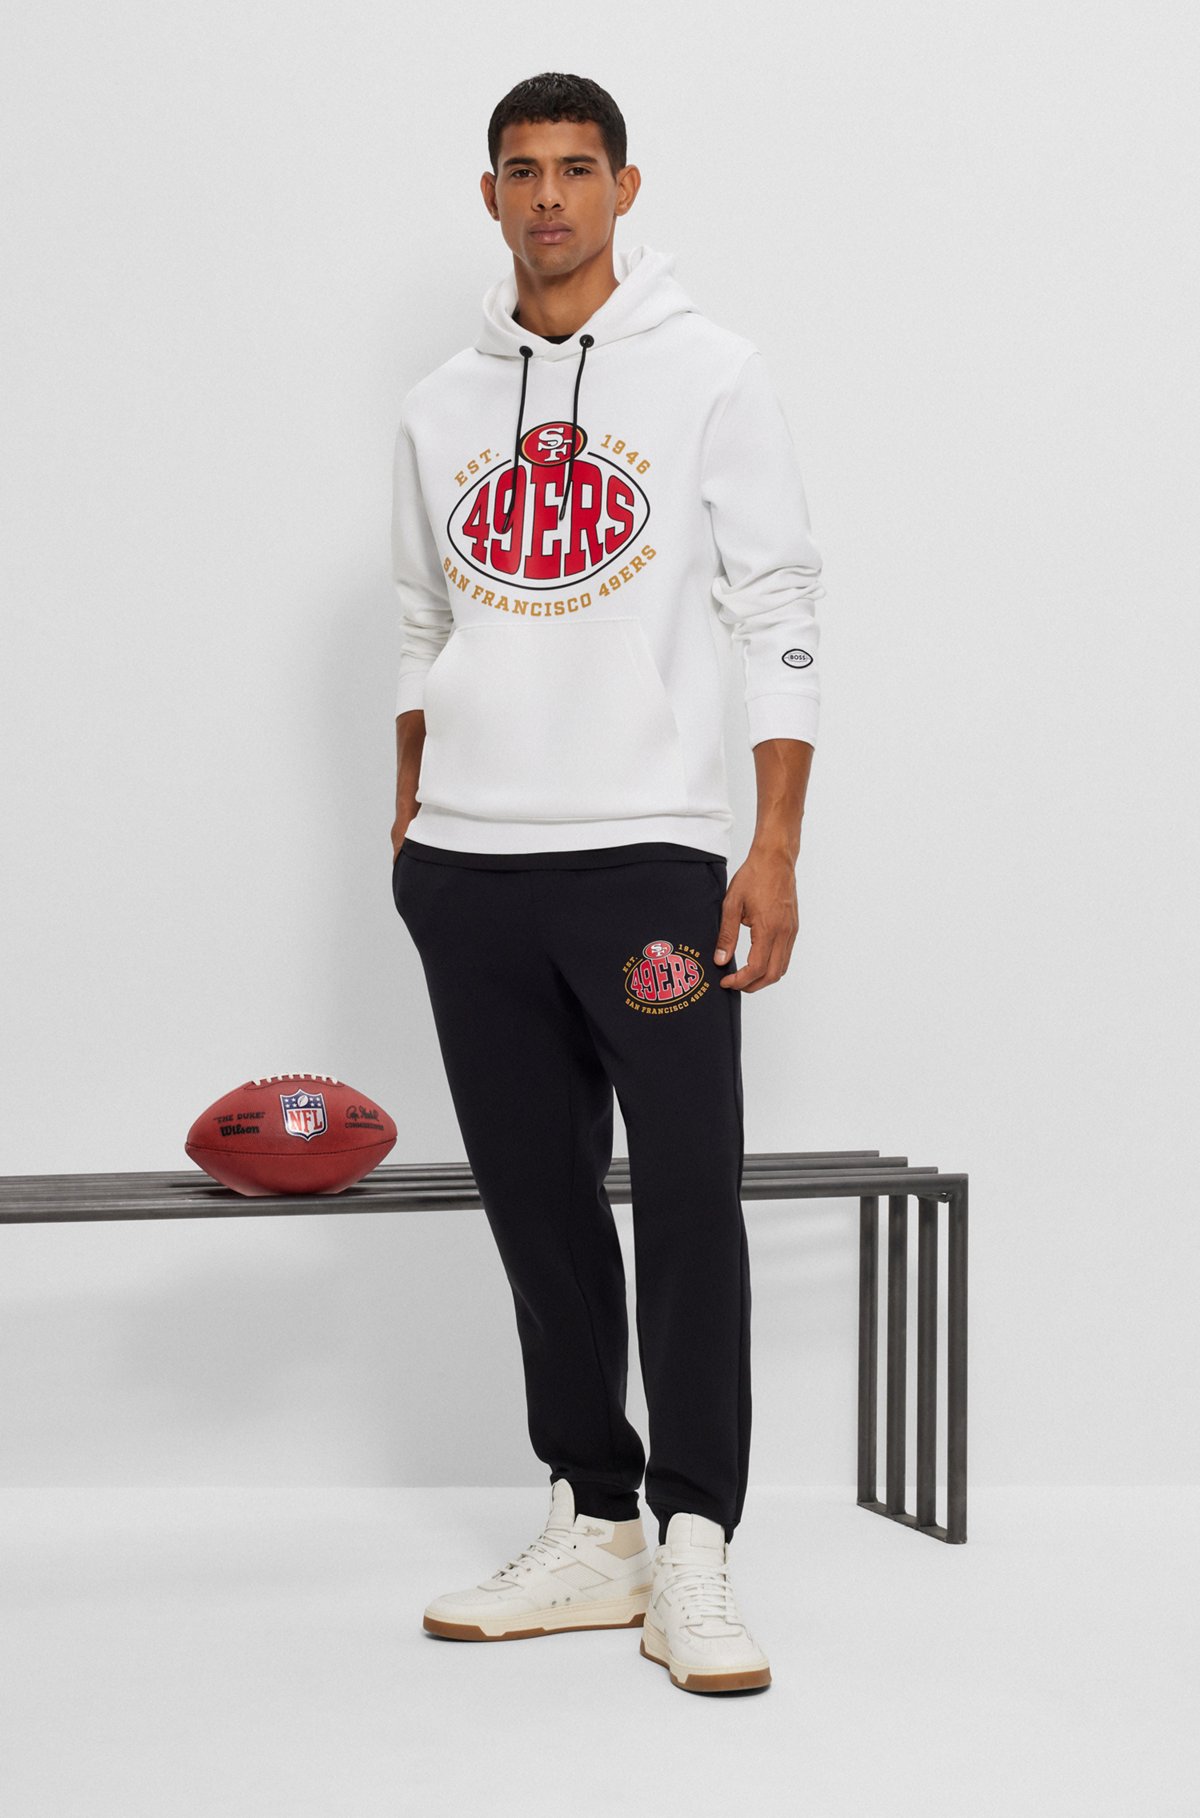  Sudadera con capucha BOSS x NFL de mezcla de algodón con detalle de la colaboración, 49ers